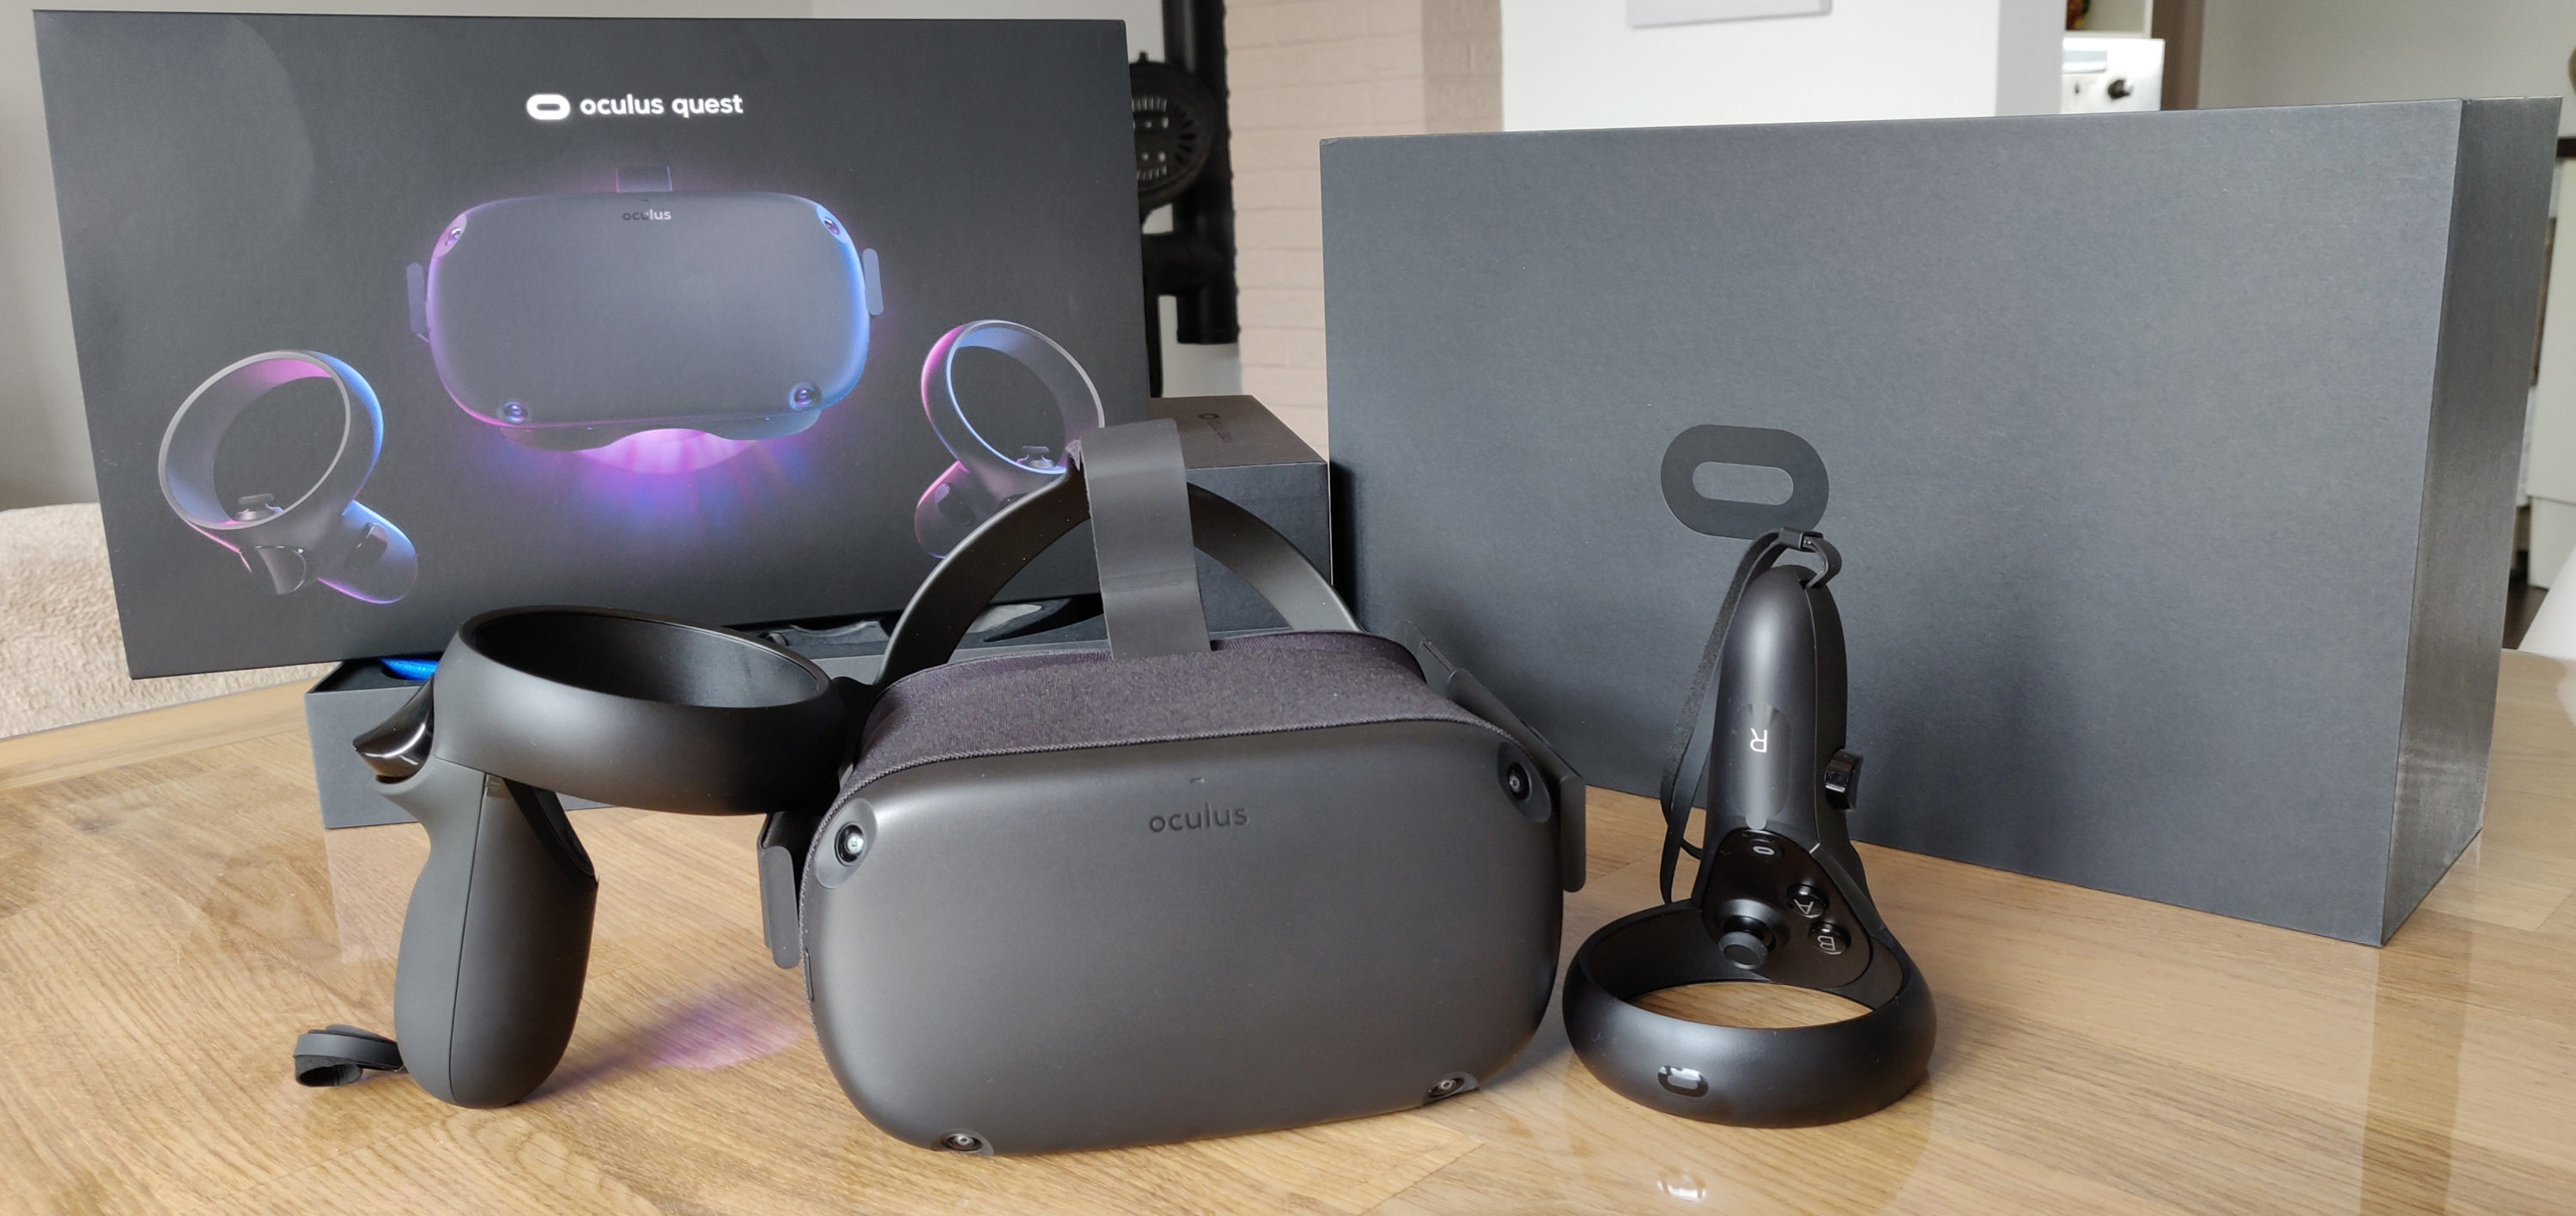 TEST Oculus Quest : Un bond en avant pour la réalité virtuelle